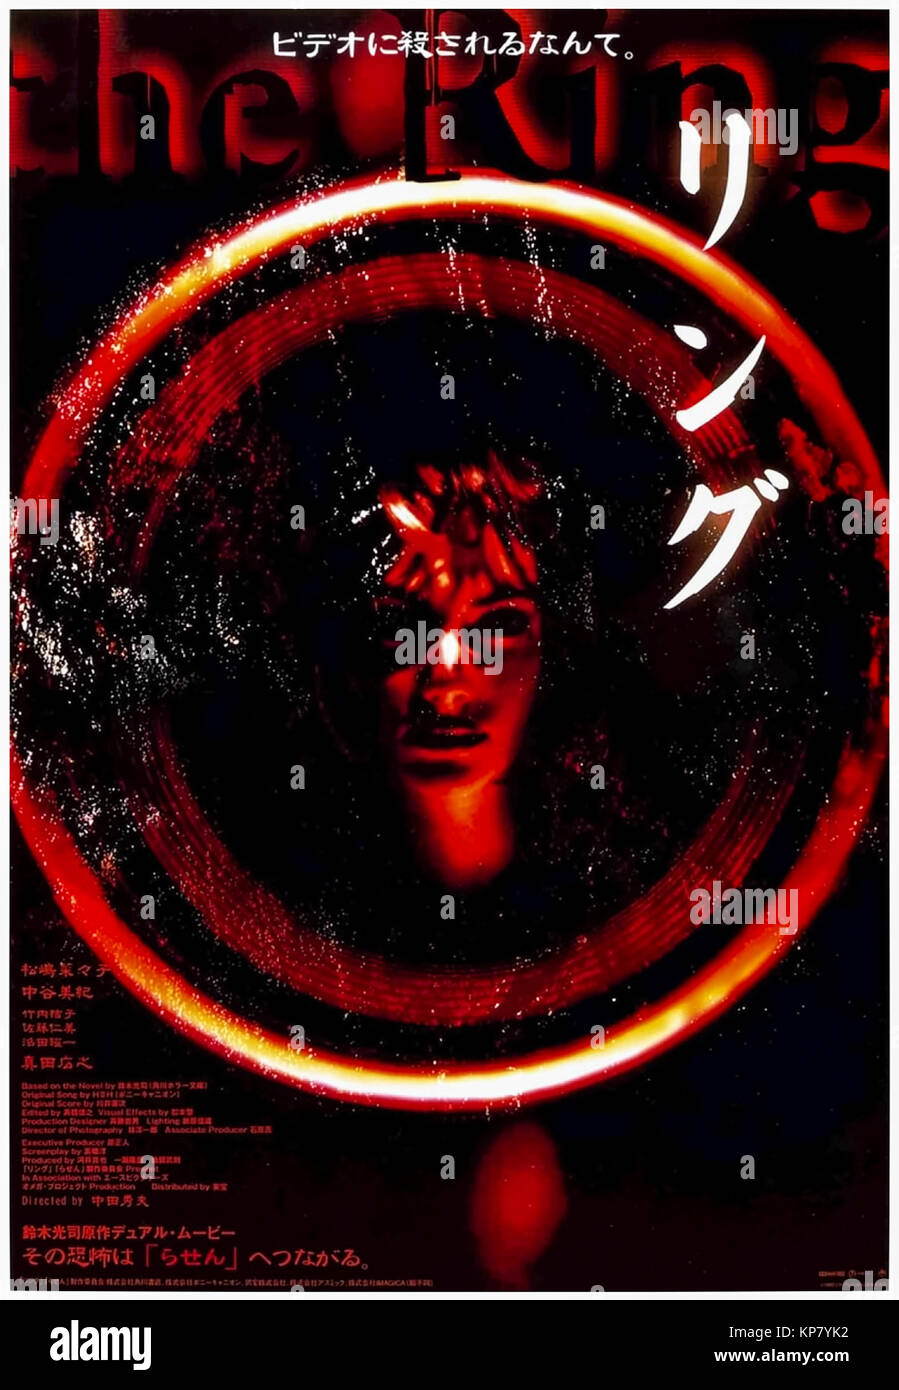 Ringu (Ring) (1998) von Hideo Nakata Regie und Hauptdarsteller Nanako Matsushima, Miki Nakatani und Yûko Takeuchi. Zuschauer von einem Videoband auf mysteriöse Weise sterben 7 Tage später nach einem Treffen mit Sadako in dieser innovativen japanischen Horror. Stockfoto